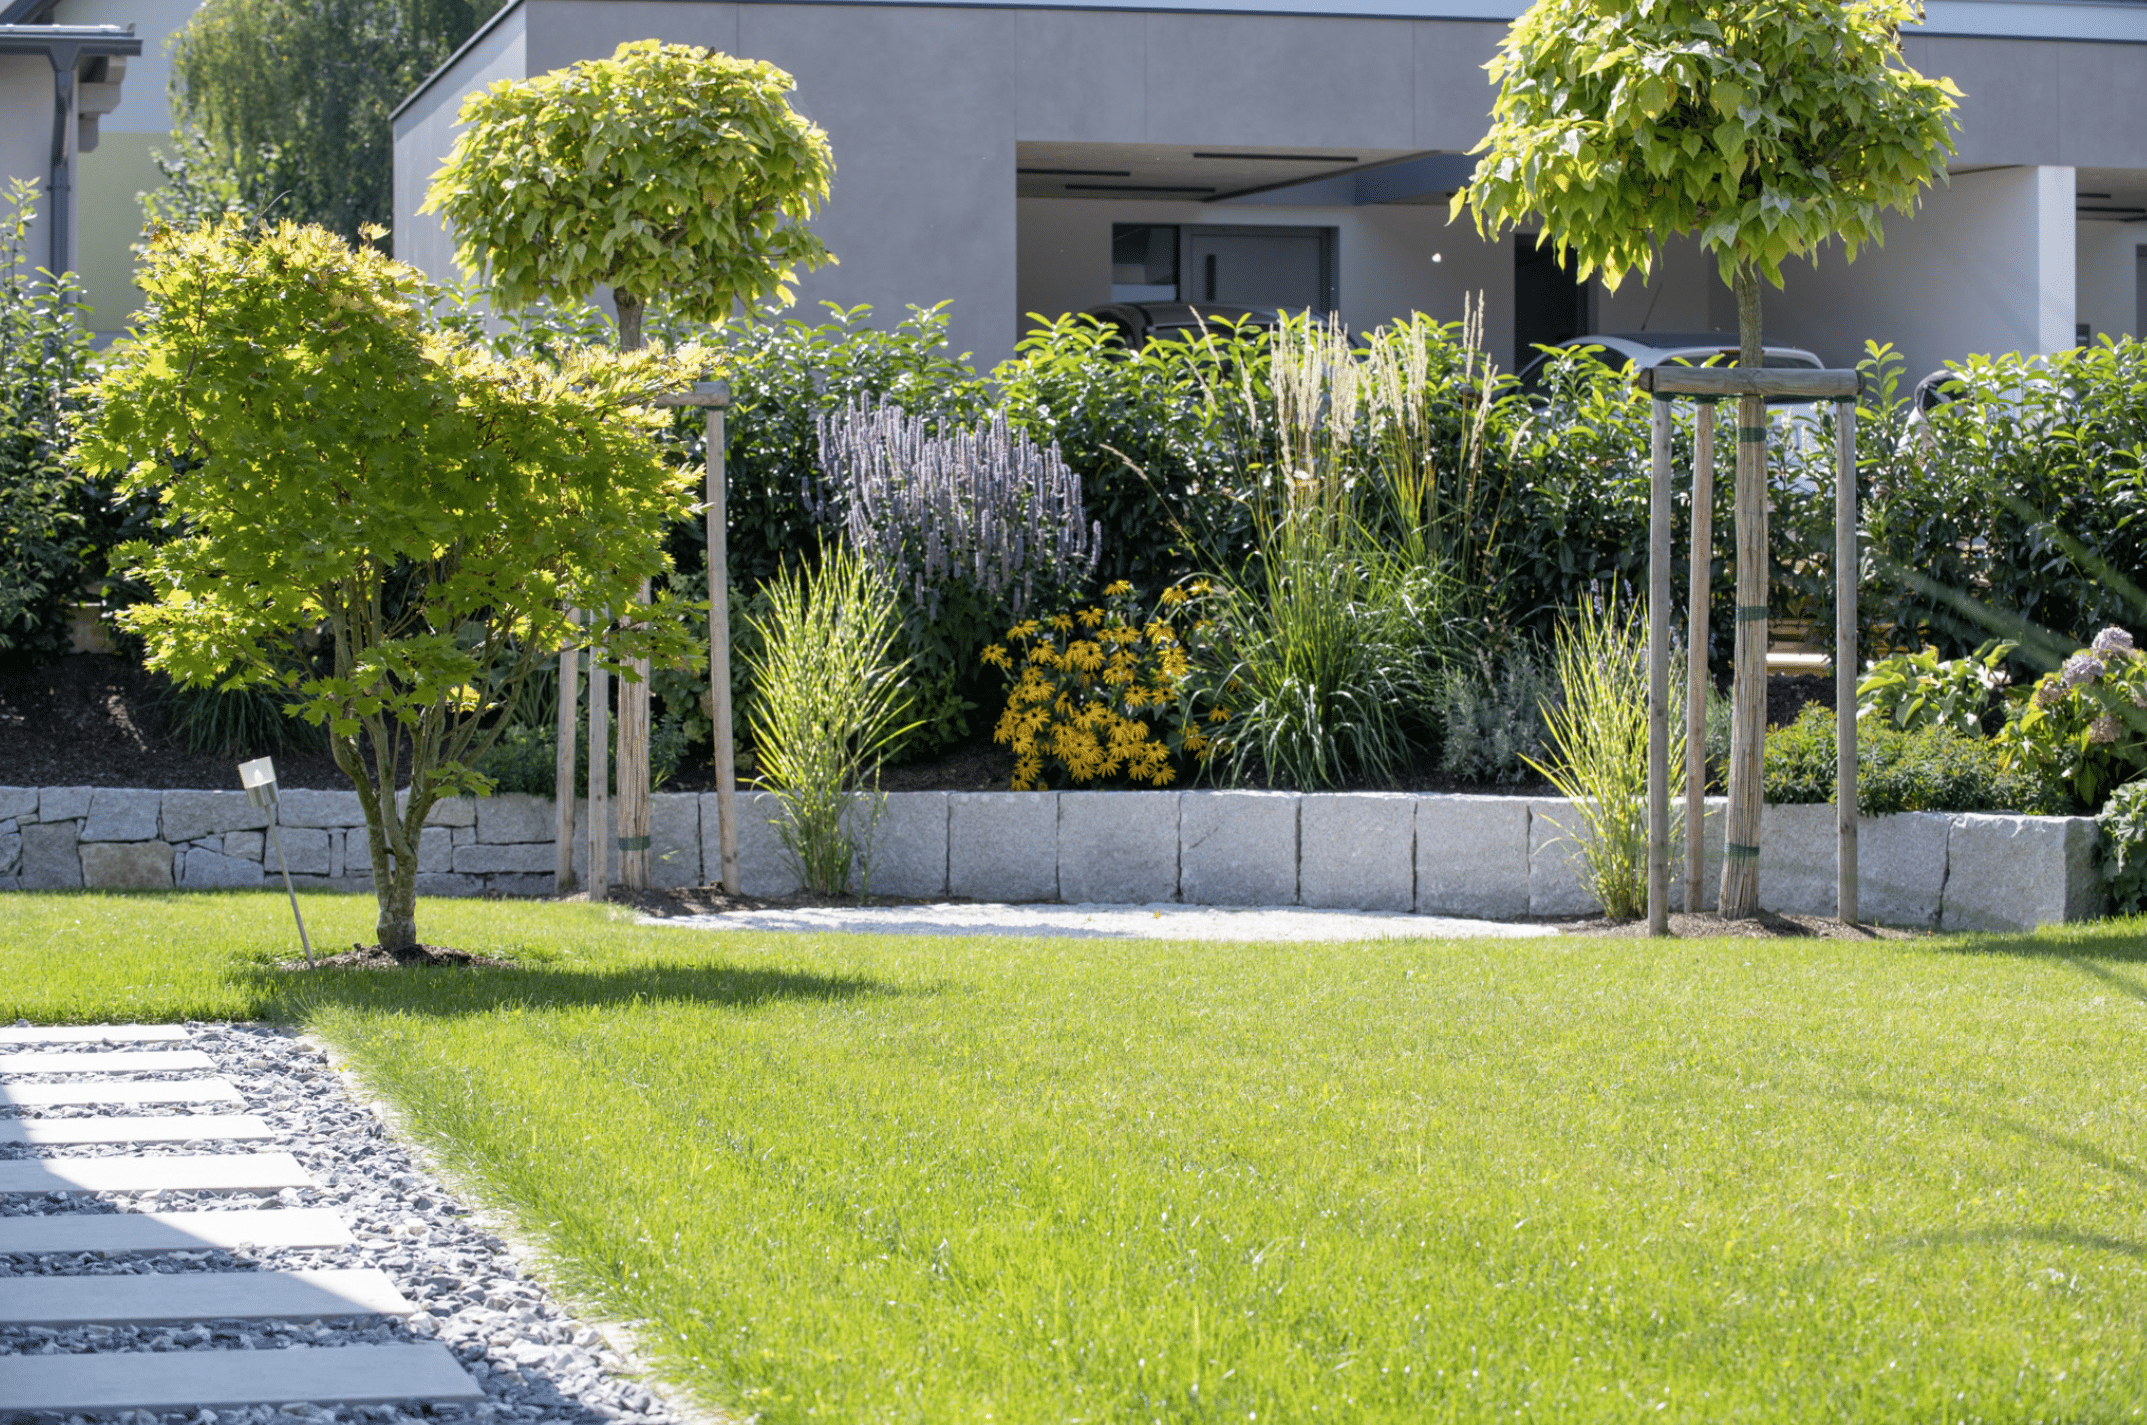 Gartenbau Schmid zeigt ein bepflanztes Beet aus Steinen mit dichter Hecke dahinter als Sichtschutz, angelegten Weg und gepflegtem Rasen.